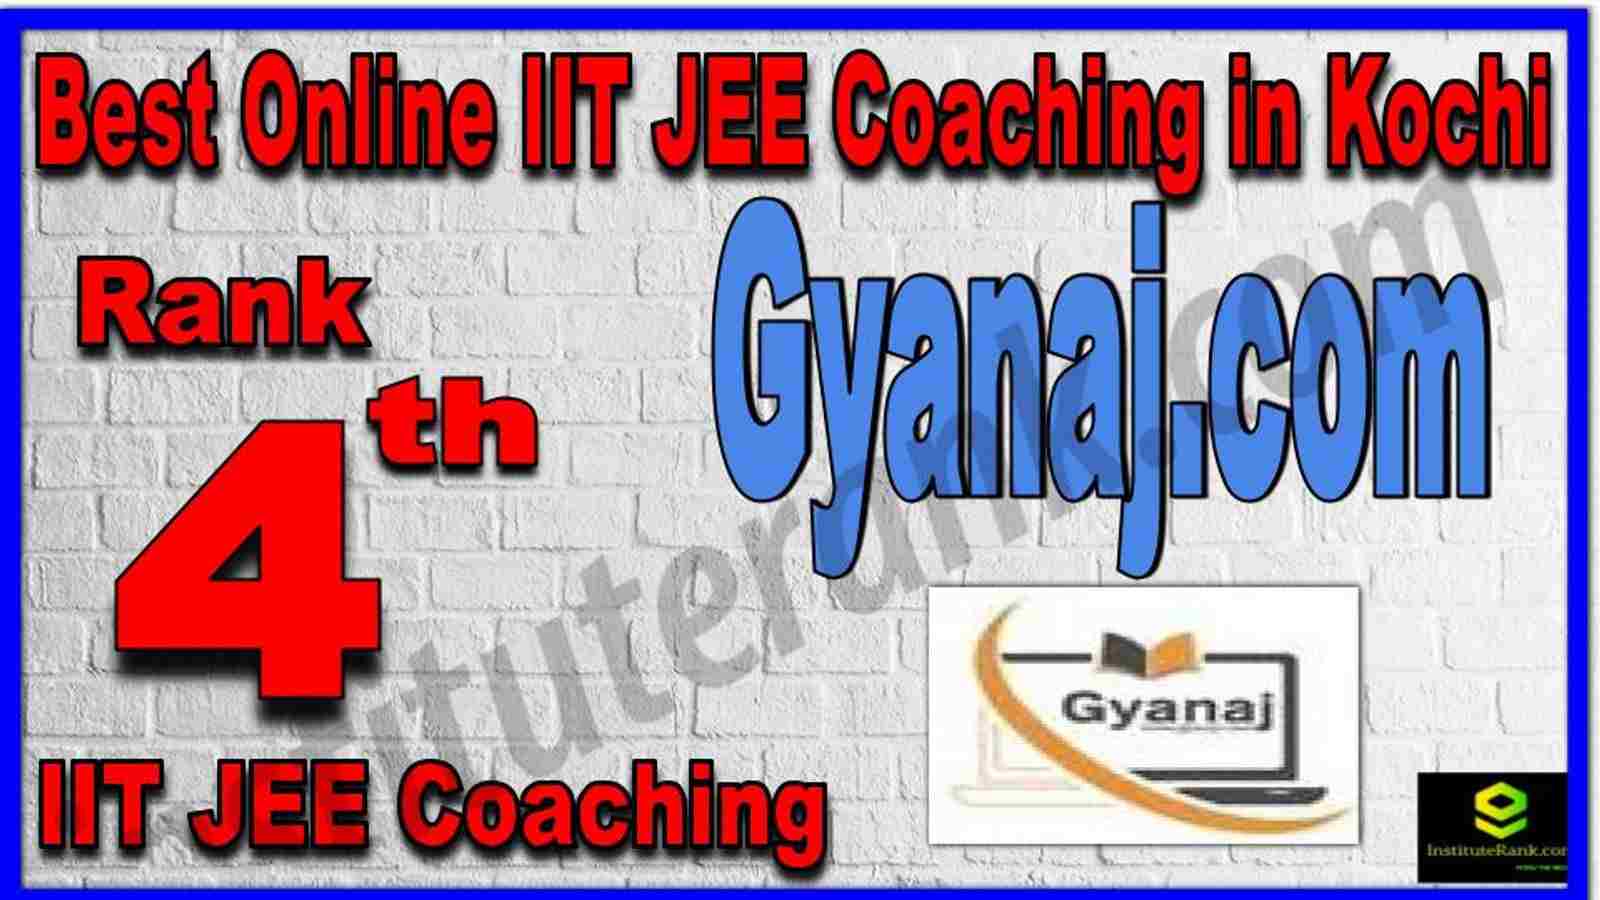 Rank 4th Best Online IIT JEE Coaching in Kochi